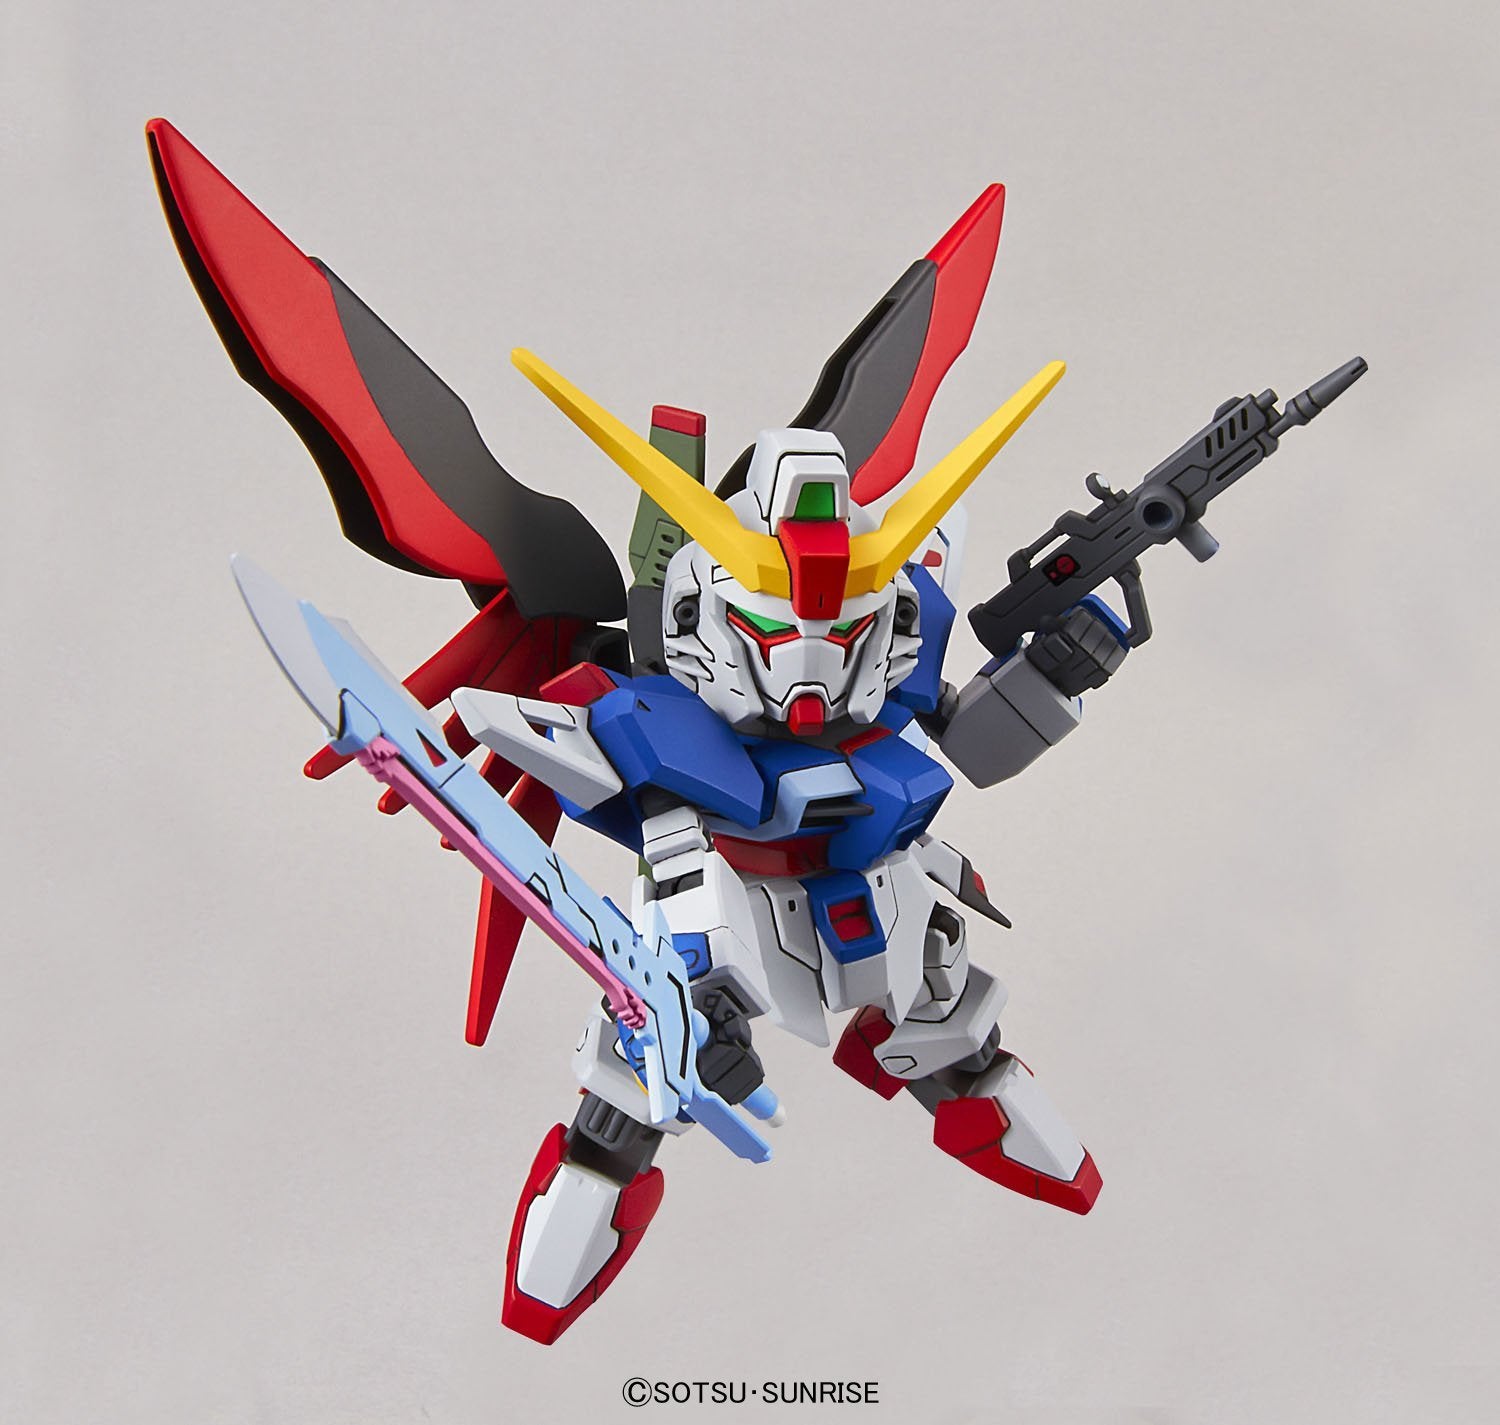 SDEX Destiny Gundam - Glacier Hobbies - Bandai